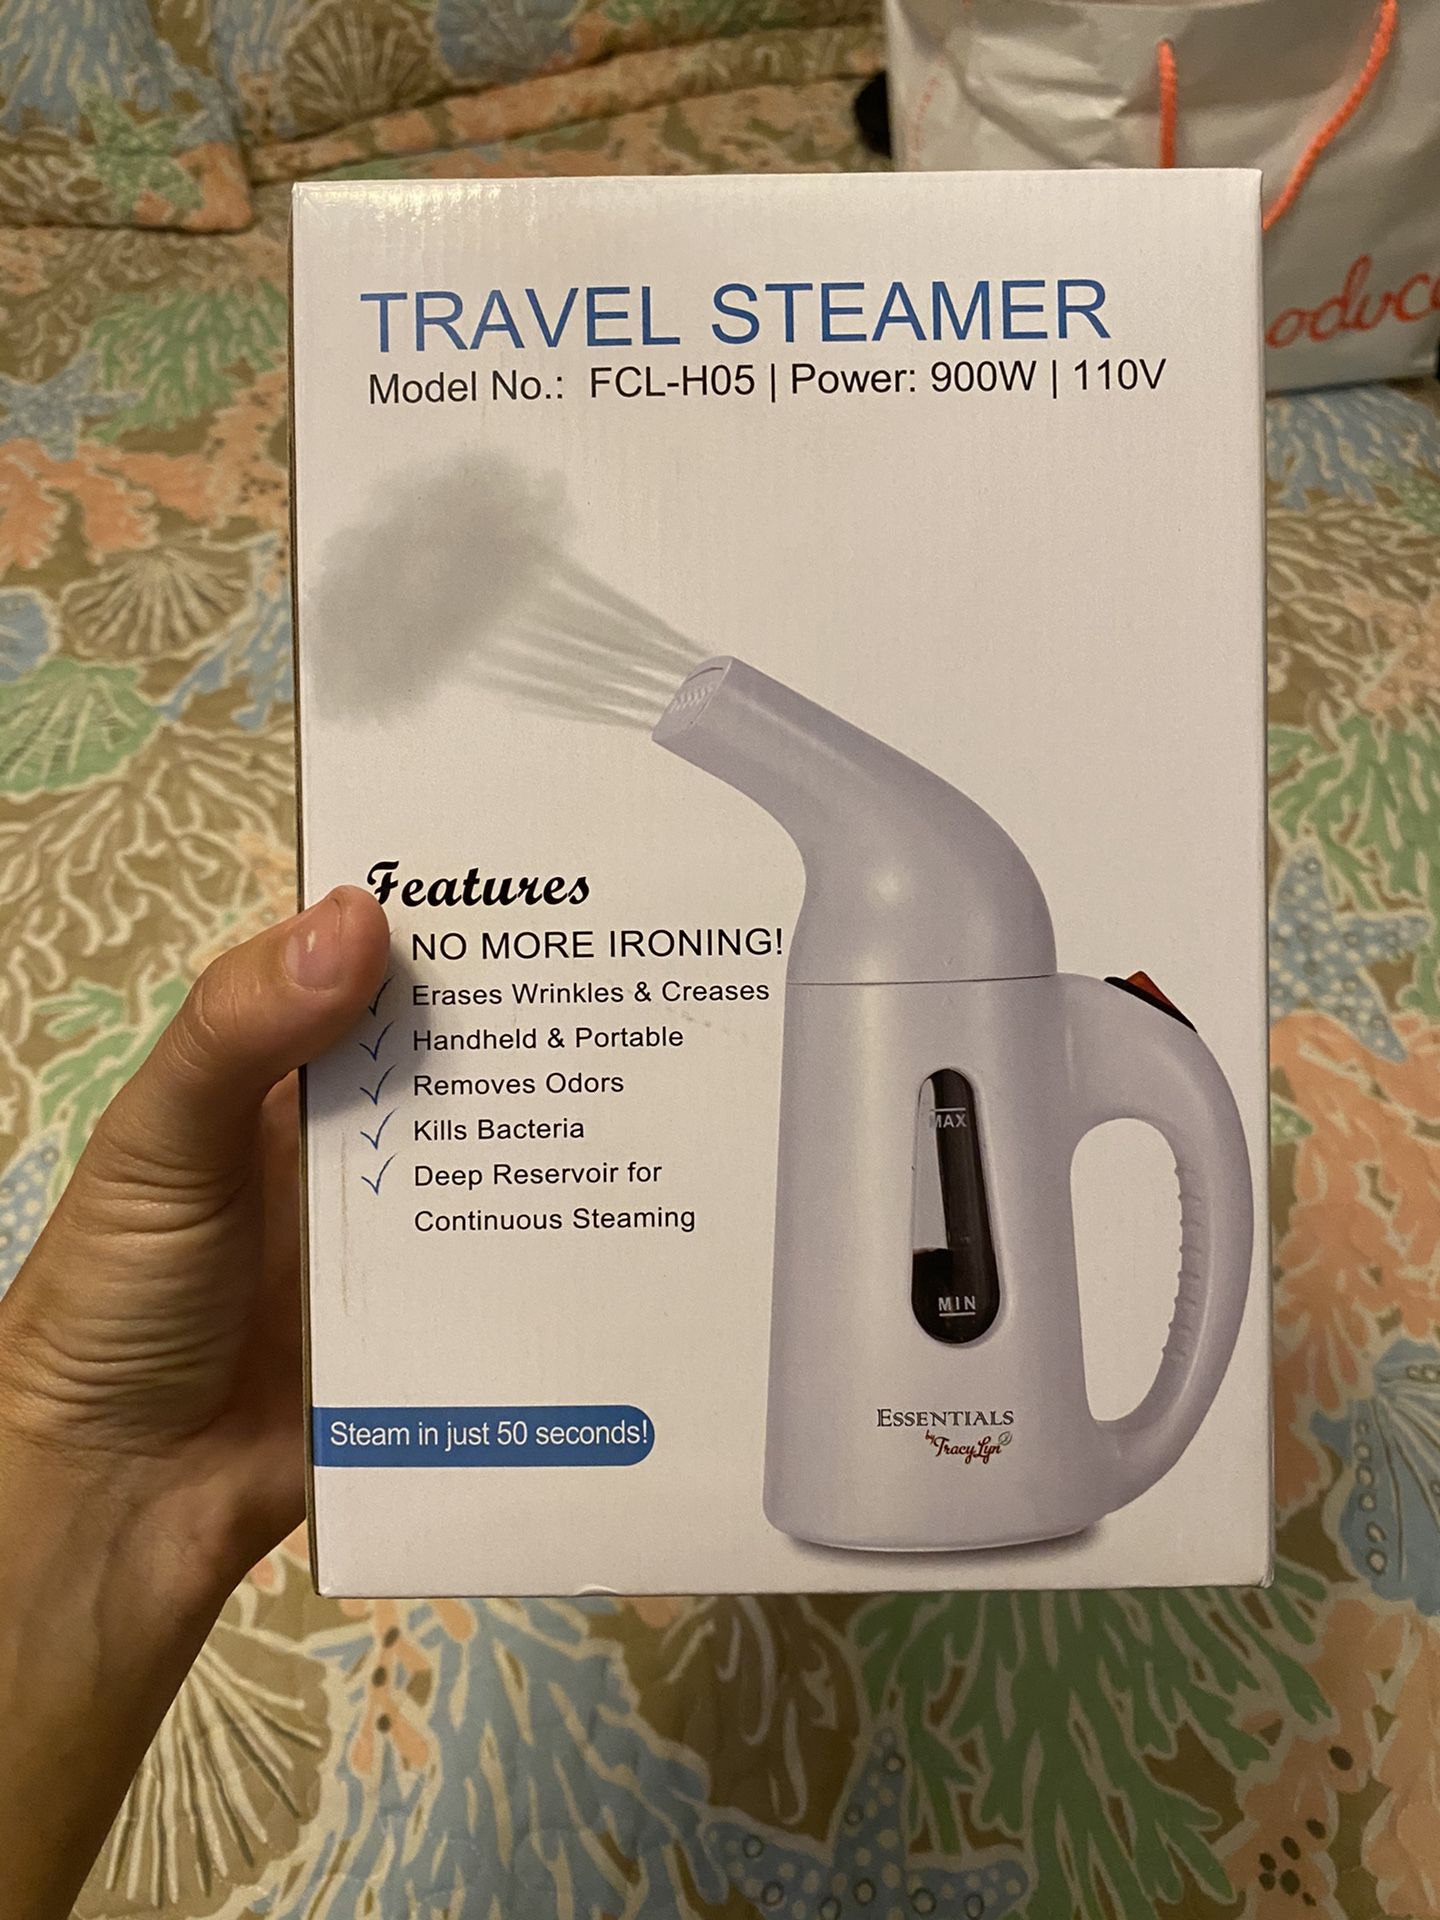 Travel steamer